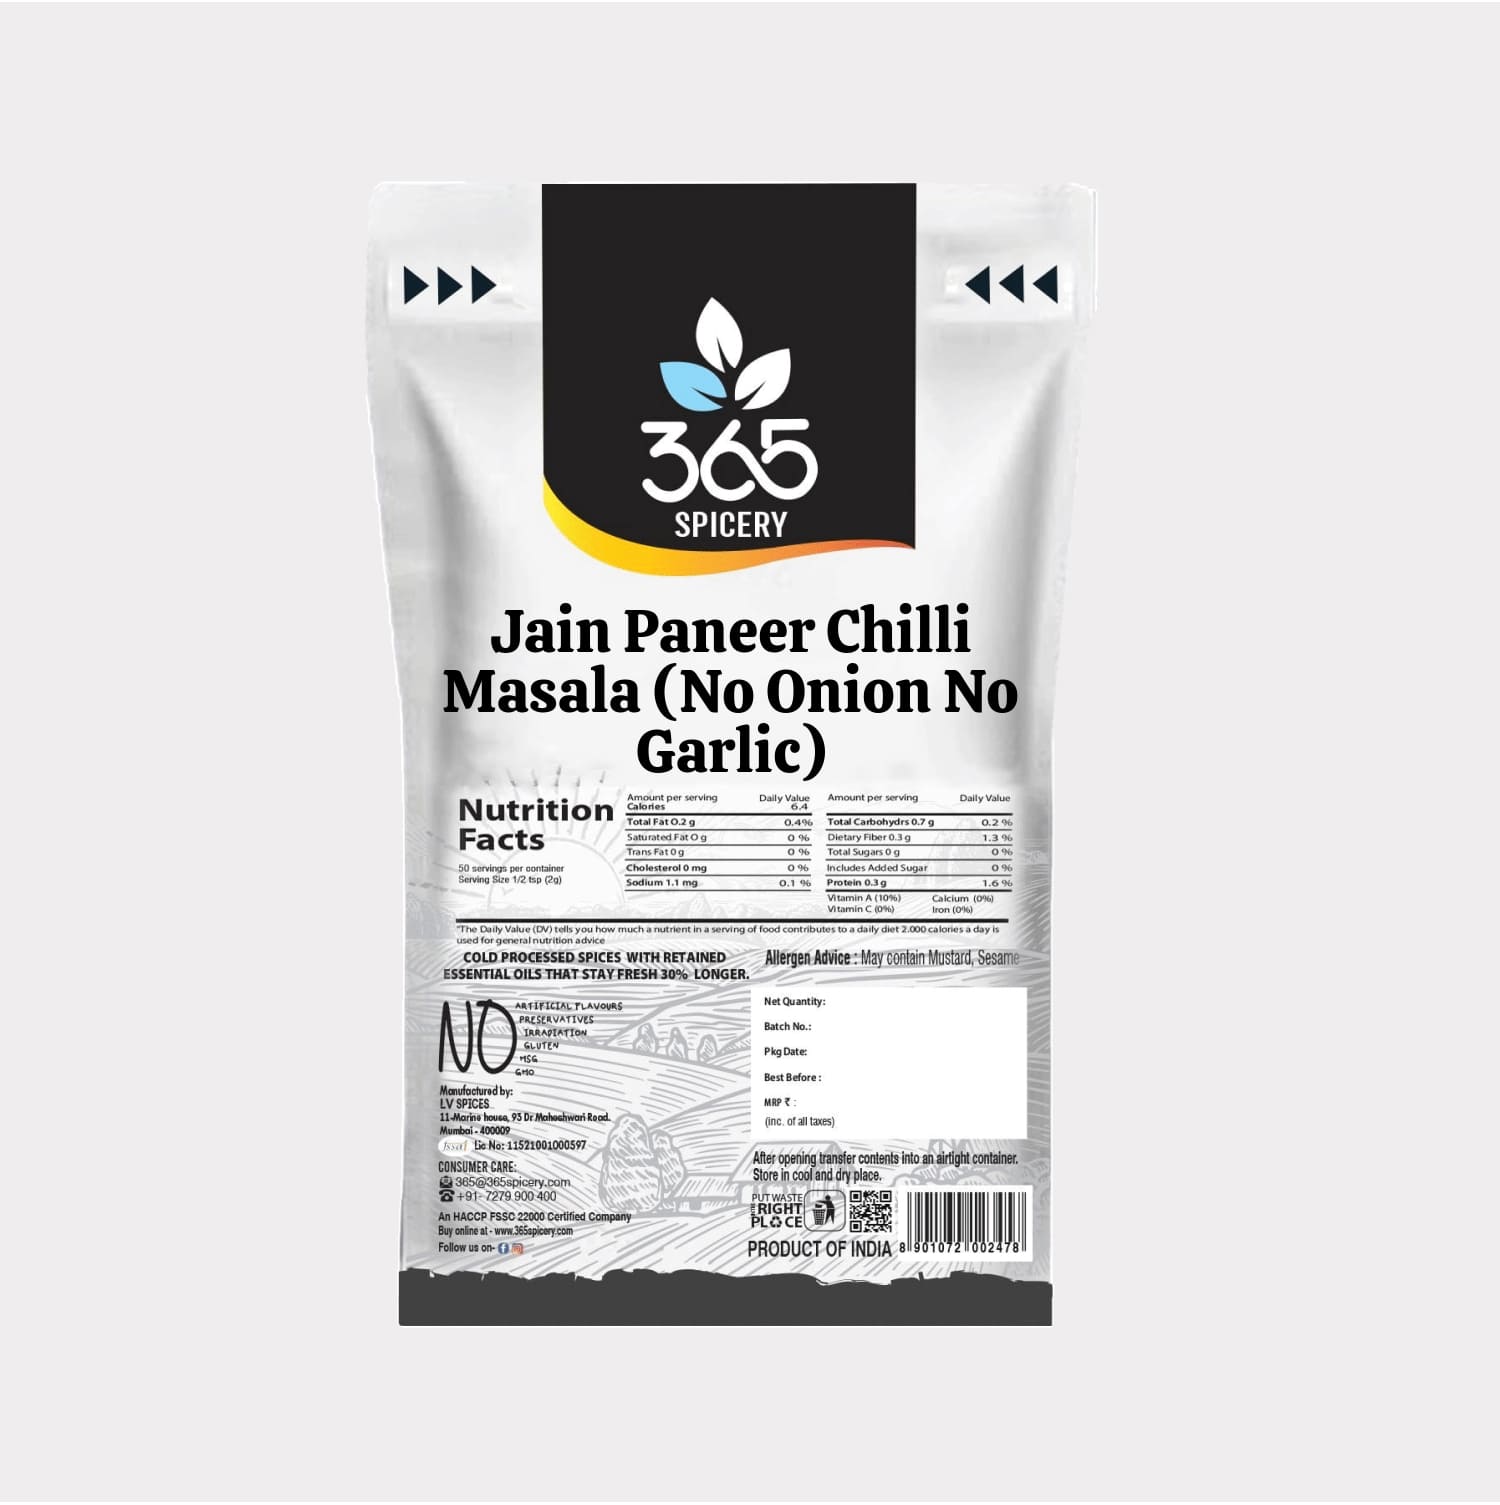 Jain Paneer Chilli Masala (No Onion No Garlic)